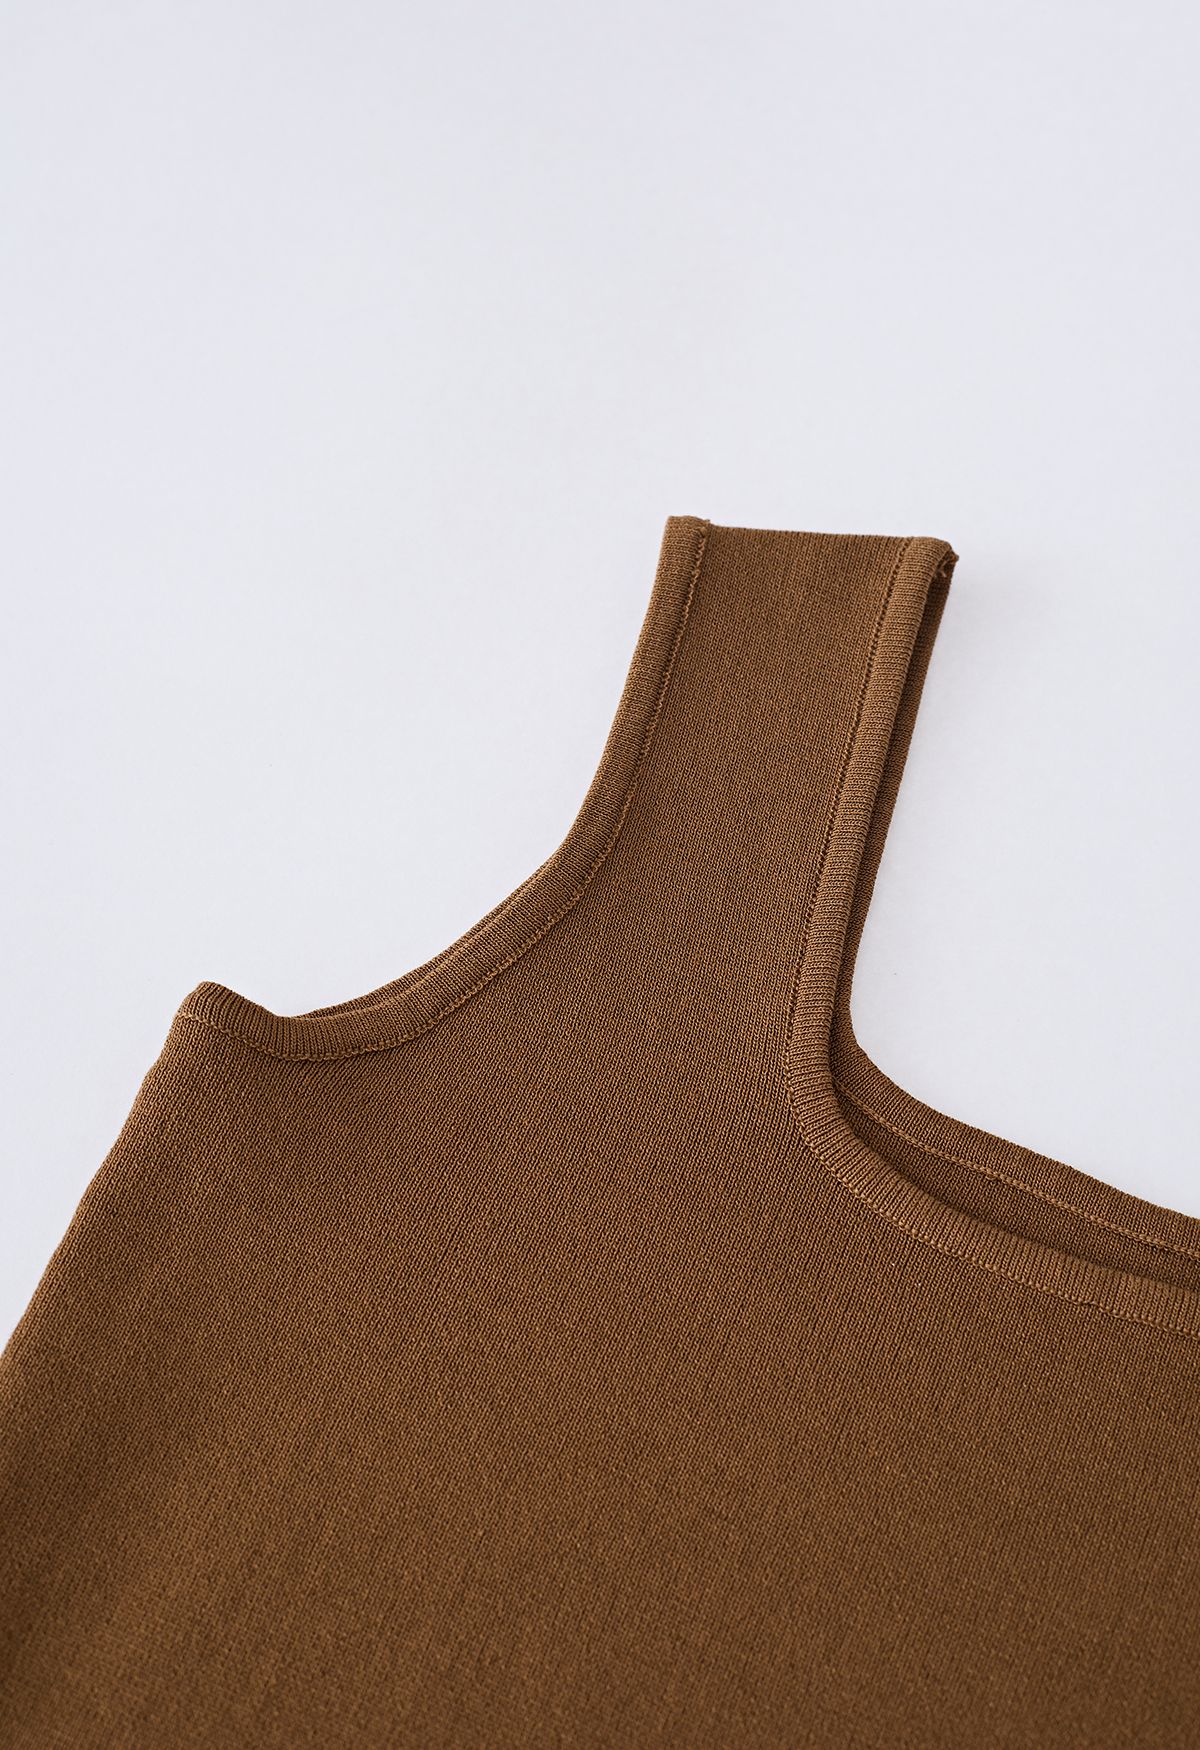 Camiseta sin mangas de punto con cuello cuadrado elegante en marrón